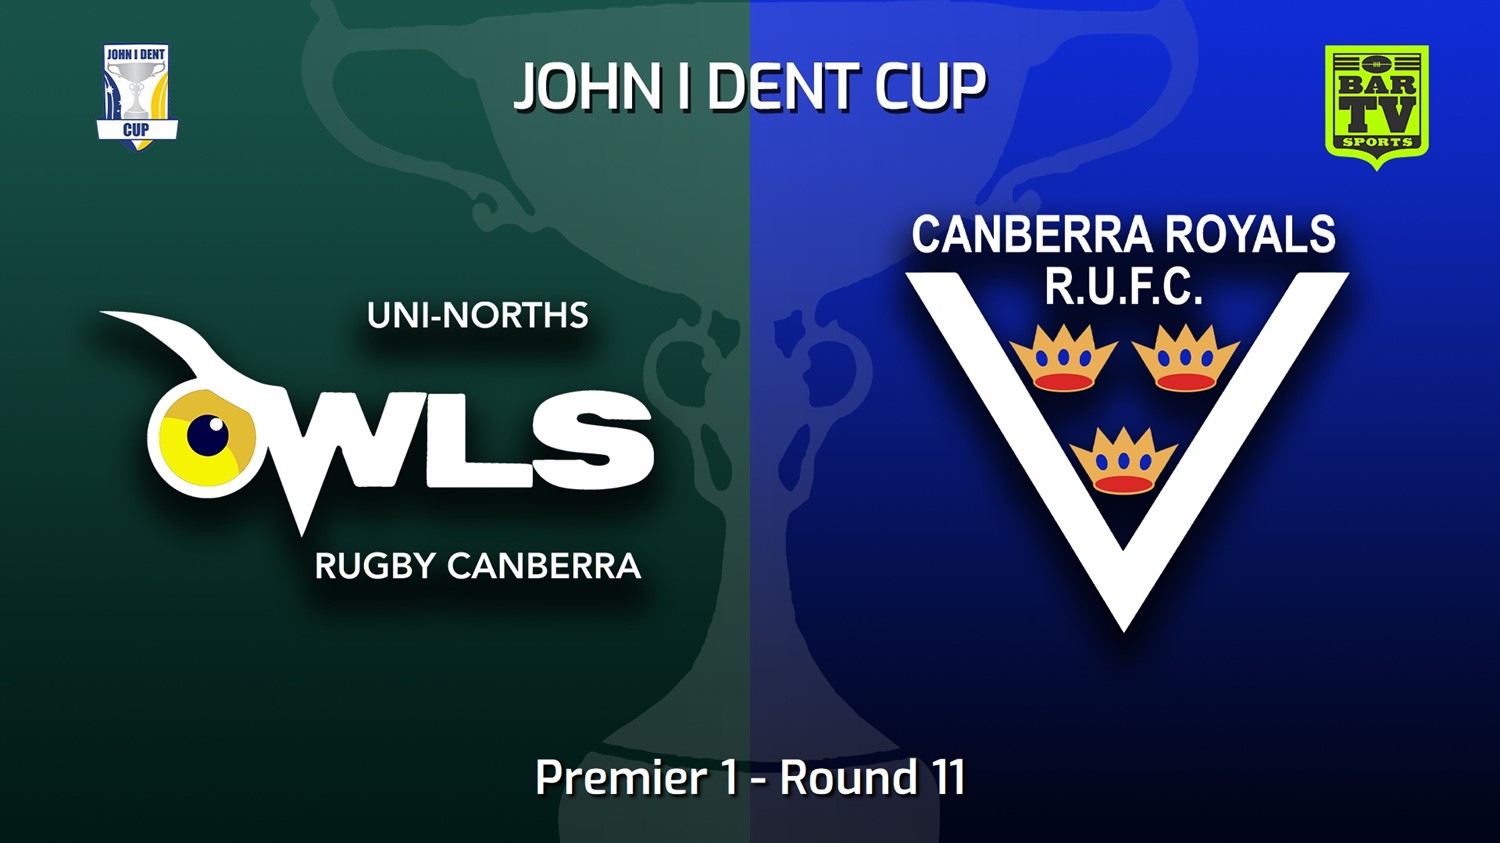 220709-John I Dent (ACT) Round 11 - Premier 1 - UNI-Norths v Canberra Royals Slate Image